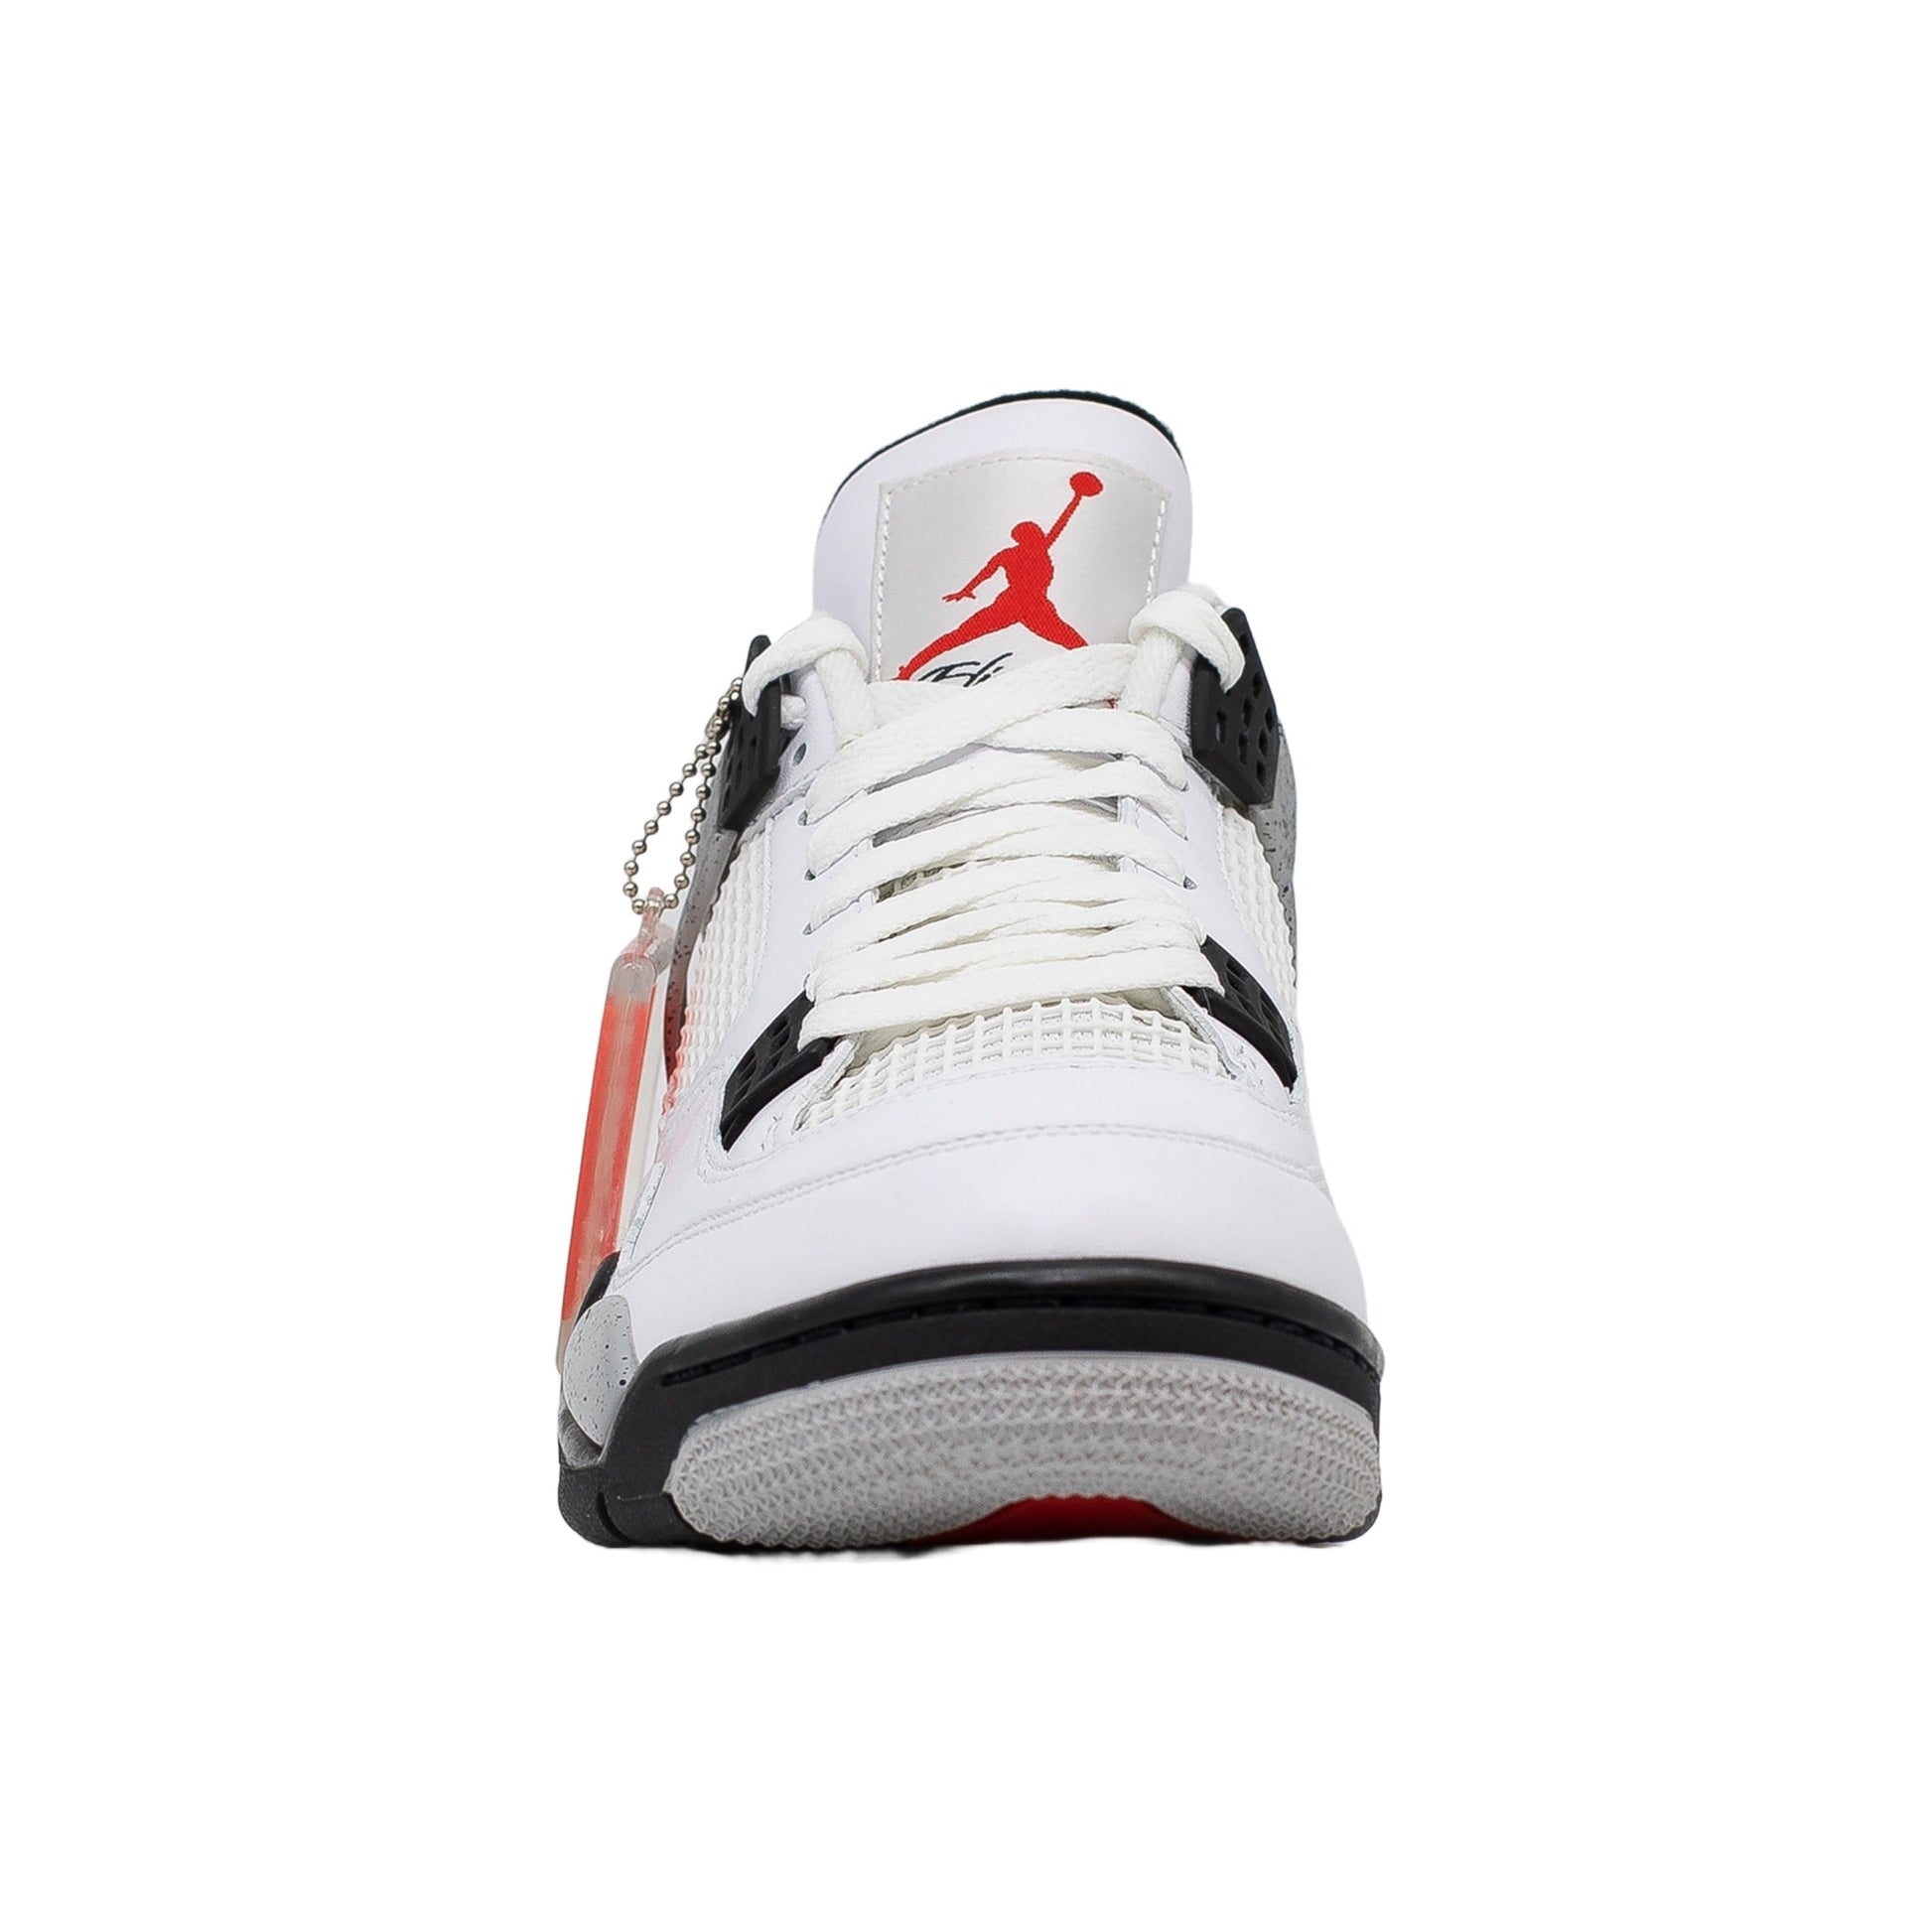 Air Jordan 4, rameses Cement (2016)